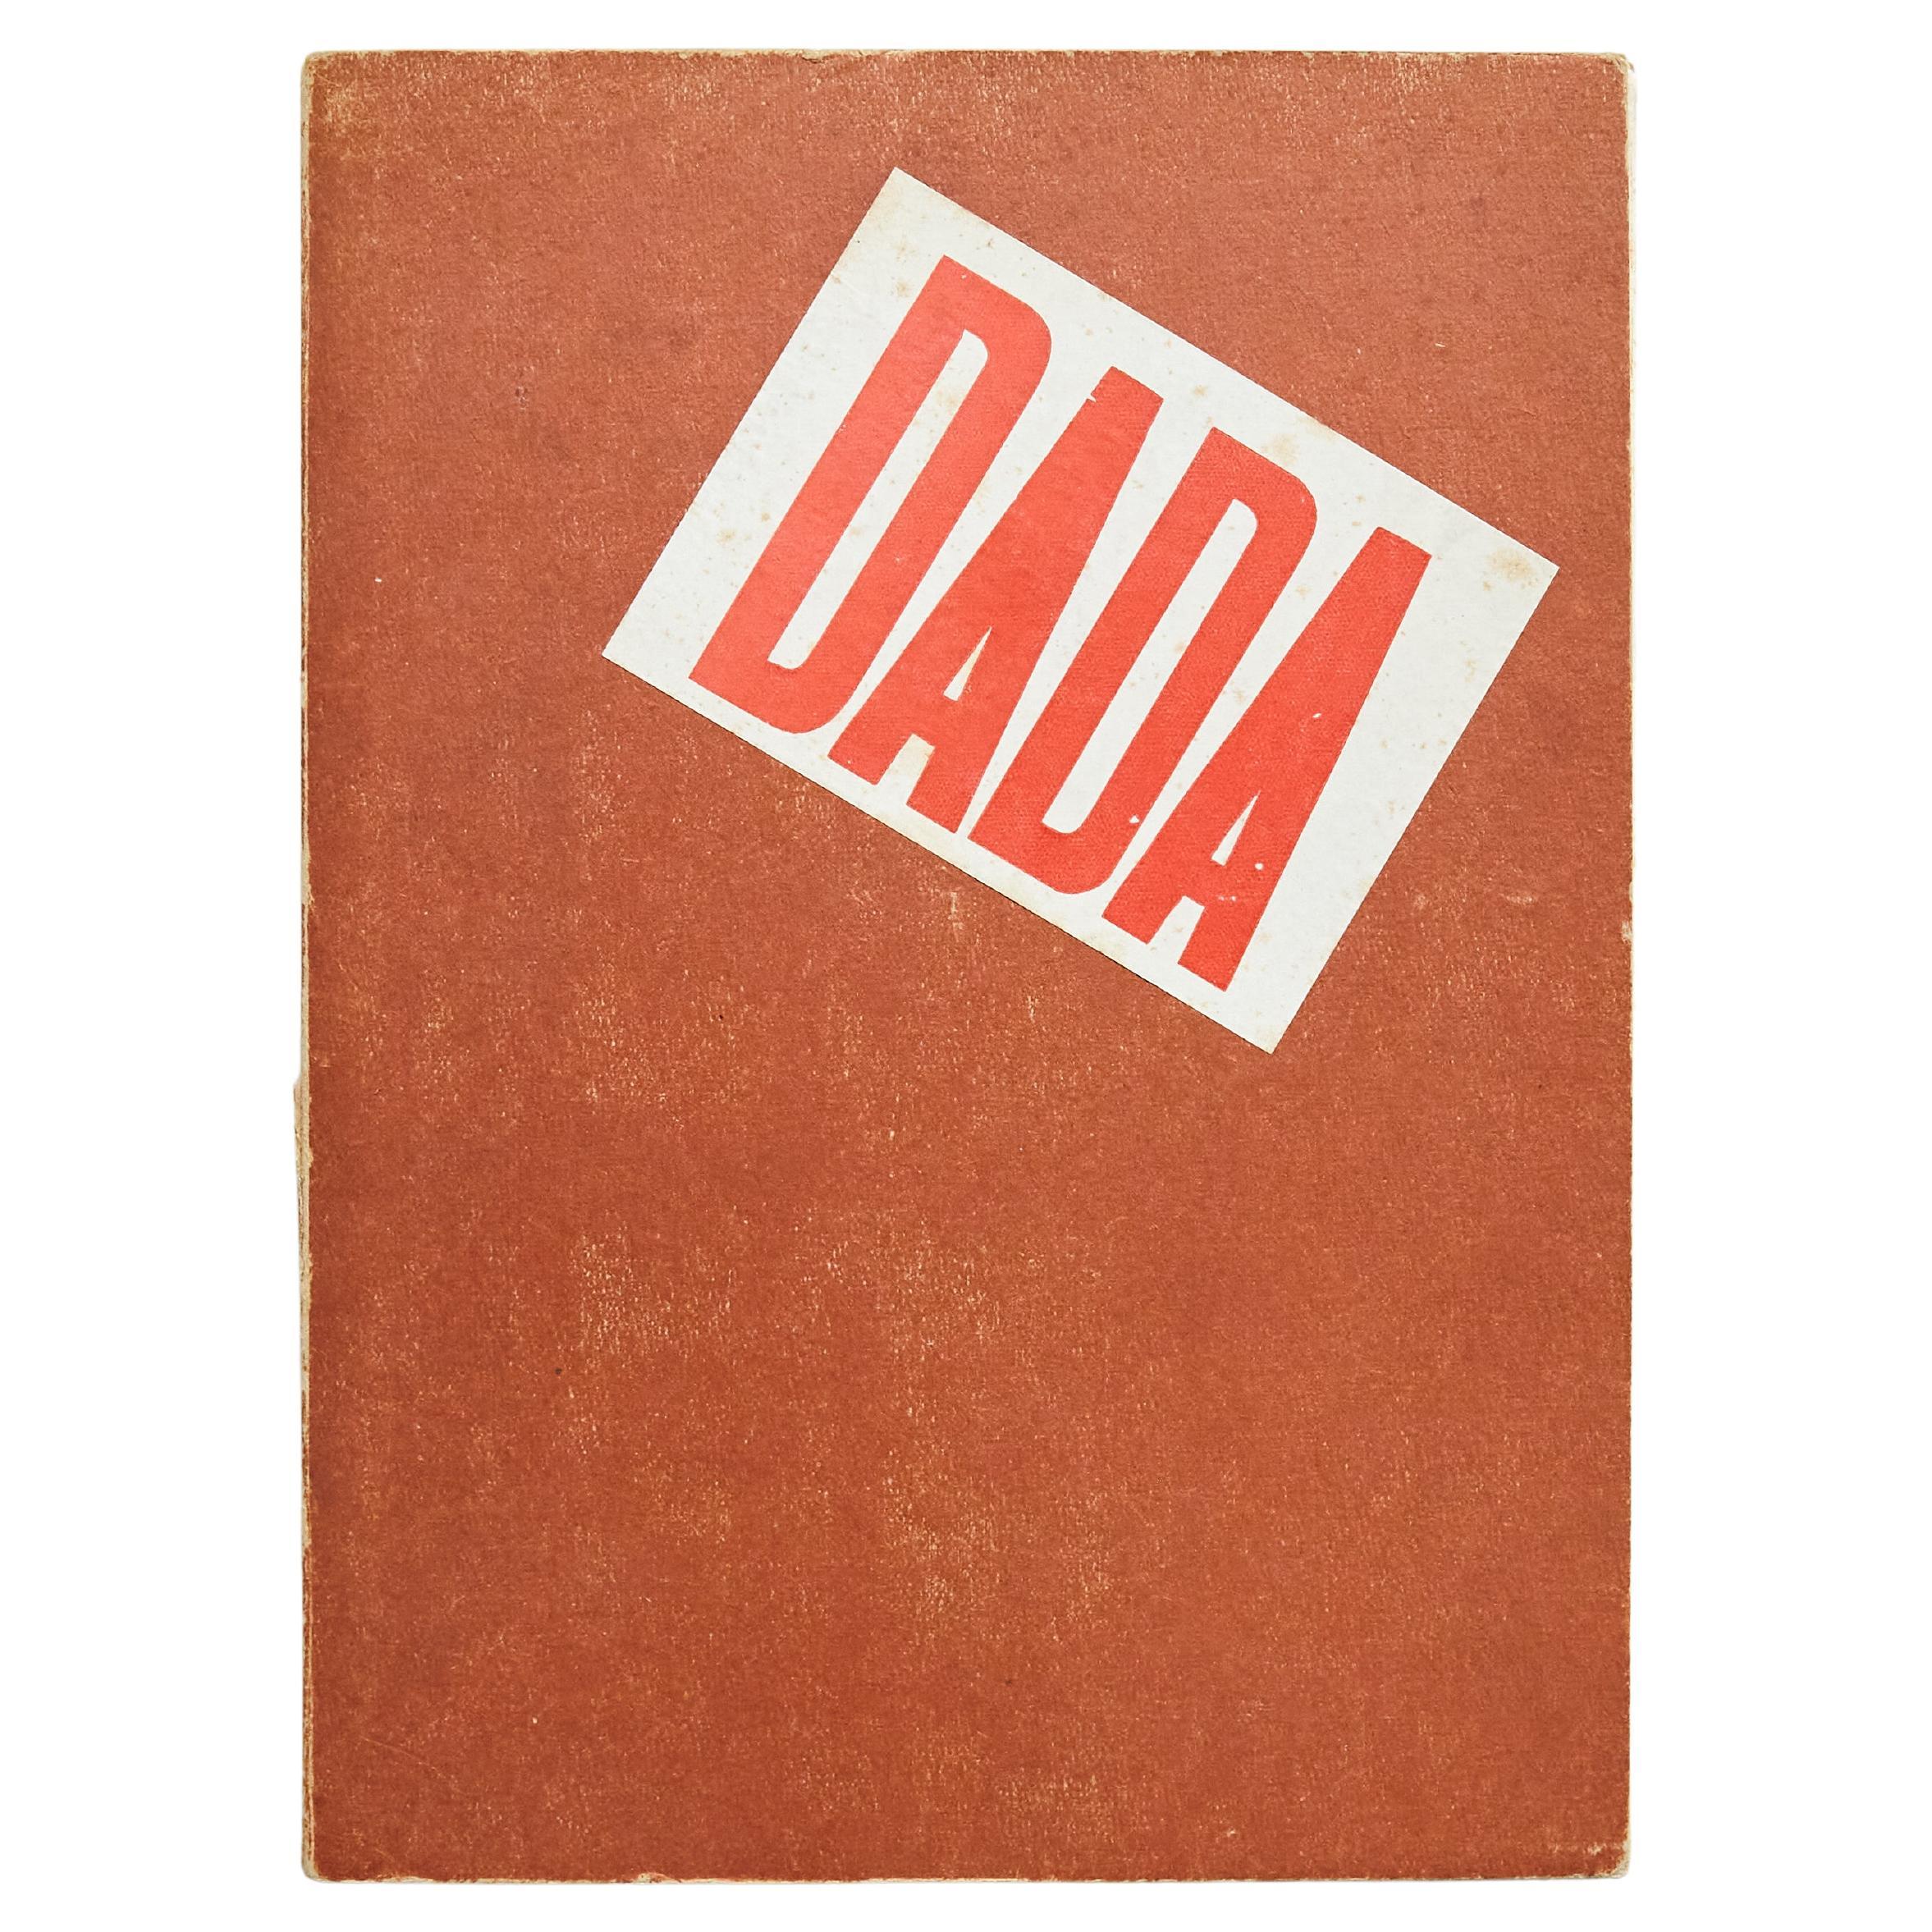 „DADA dokumentiert eine Bewegung“, Veröffentlichung 1958 im Angebot